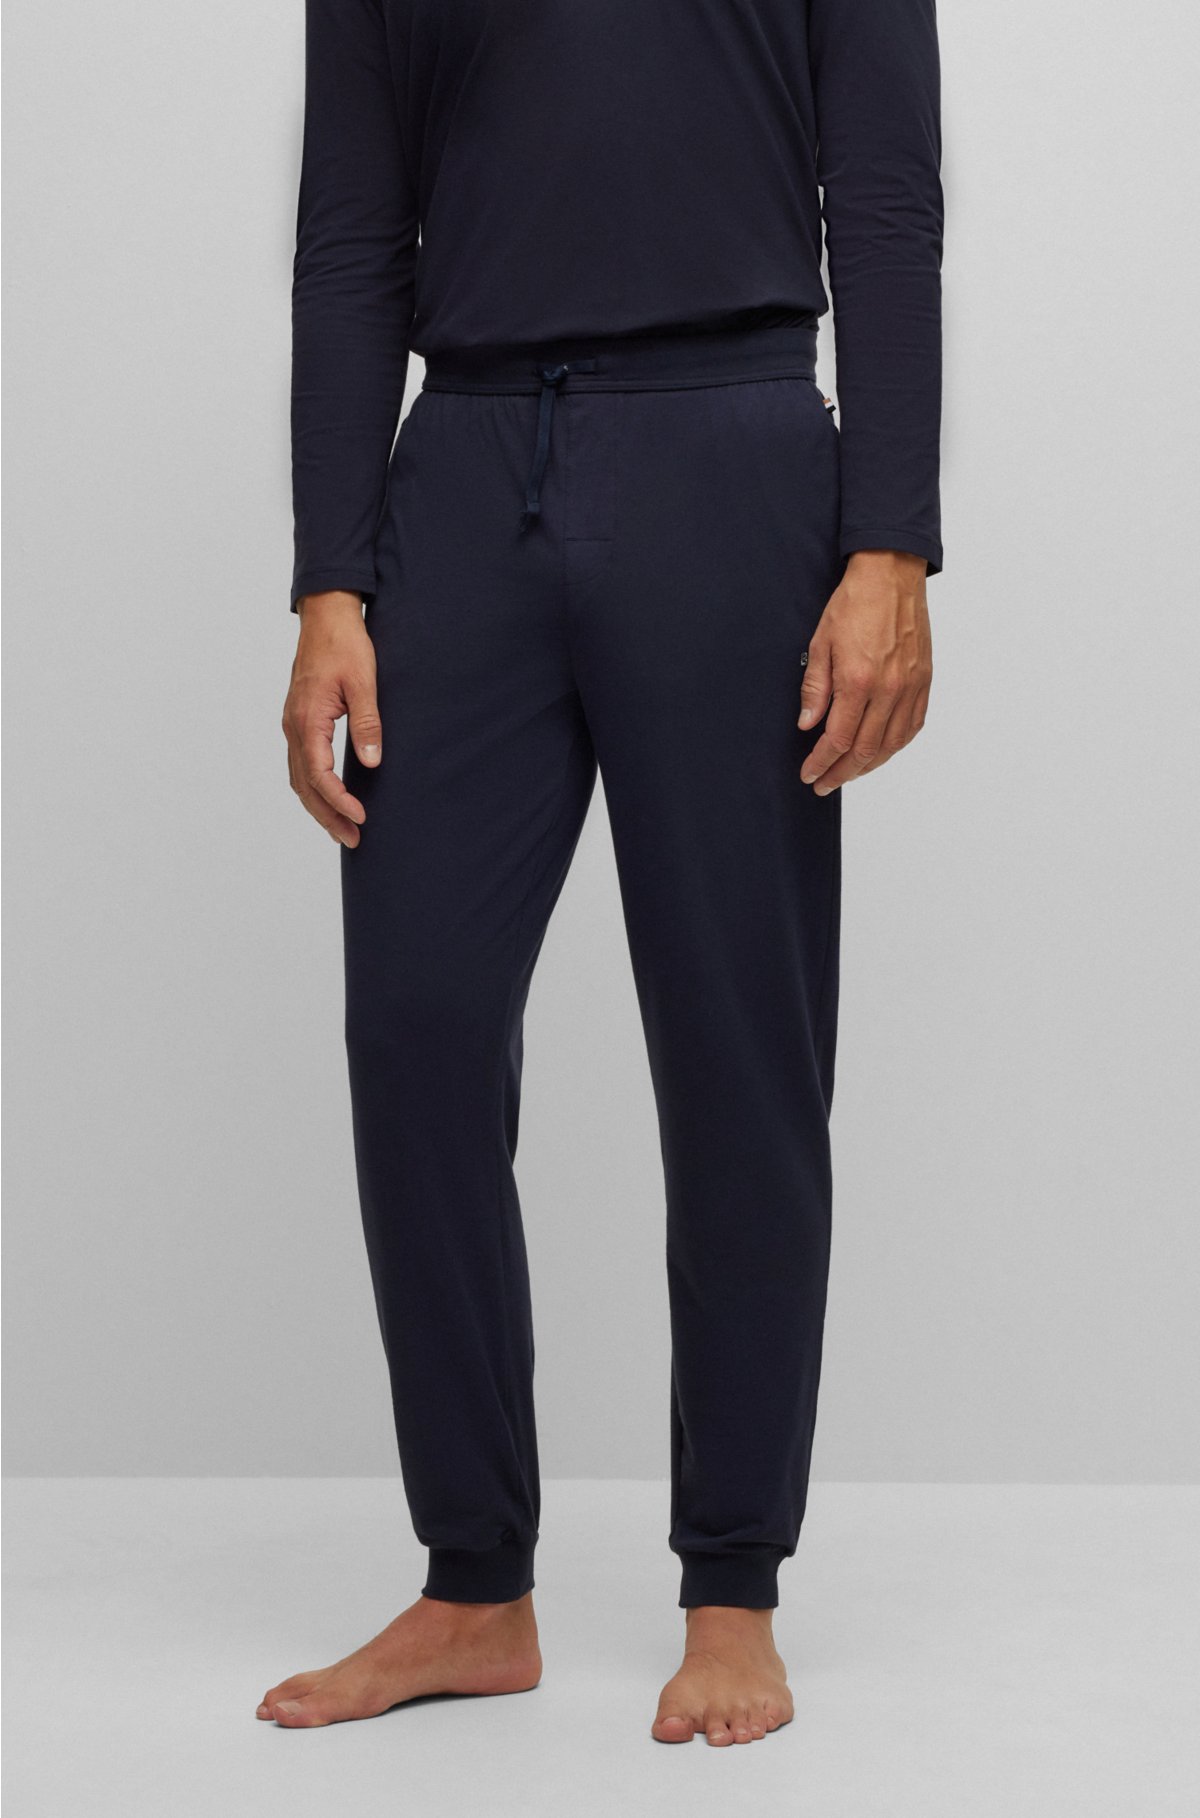 Pantalón chándal de algodón elástico con logo bordado de Boss Talla S Color  BLACK